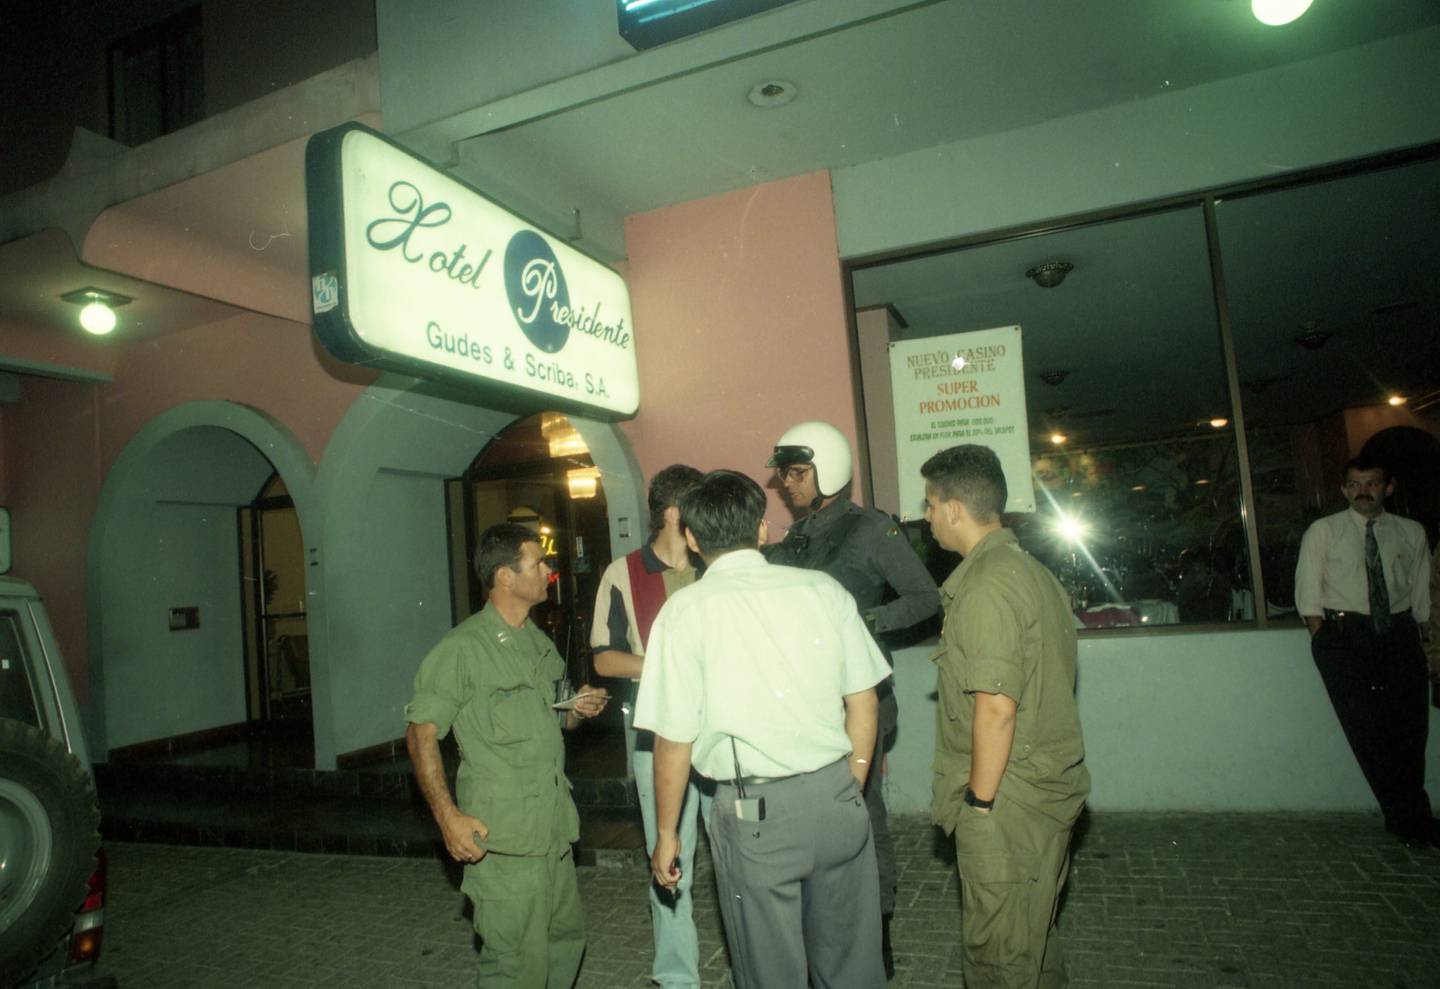 Triple homicidio ocurrido en el casino del hotel Presidente en abril de 1997. Foto Archivo.